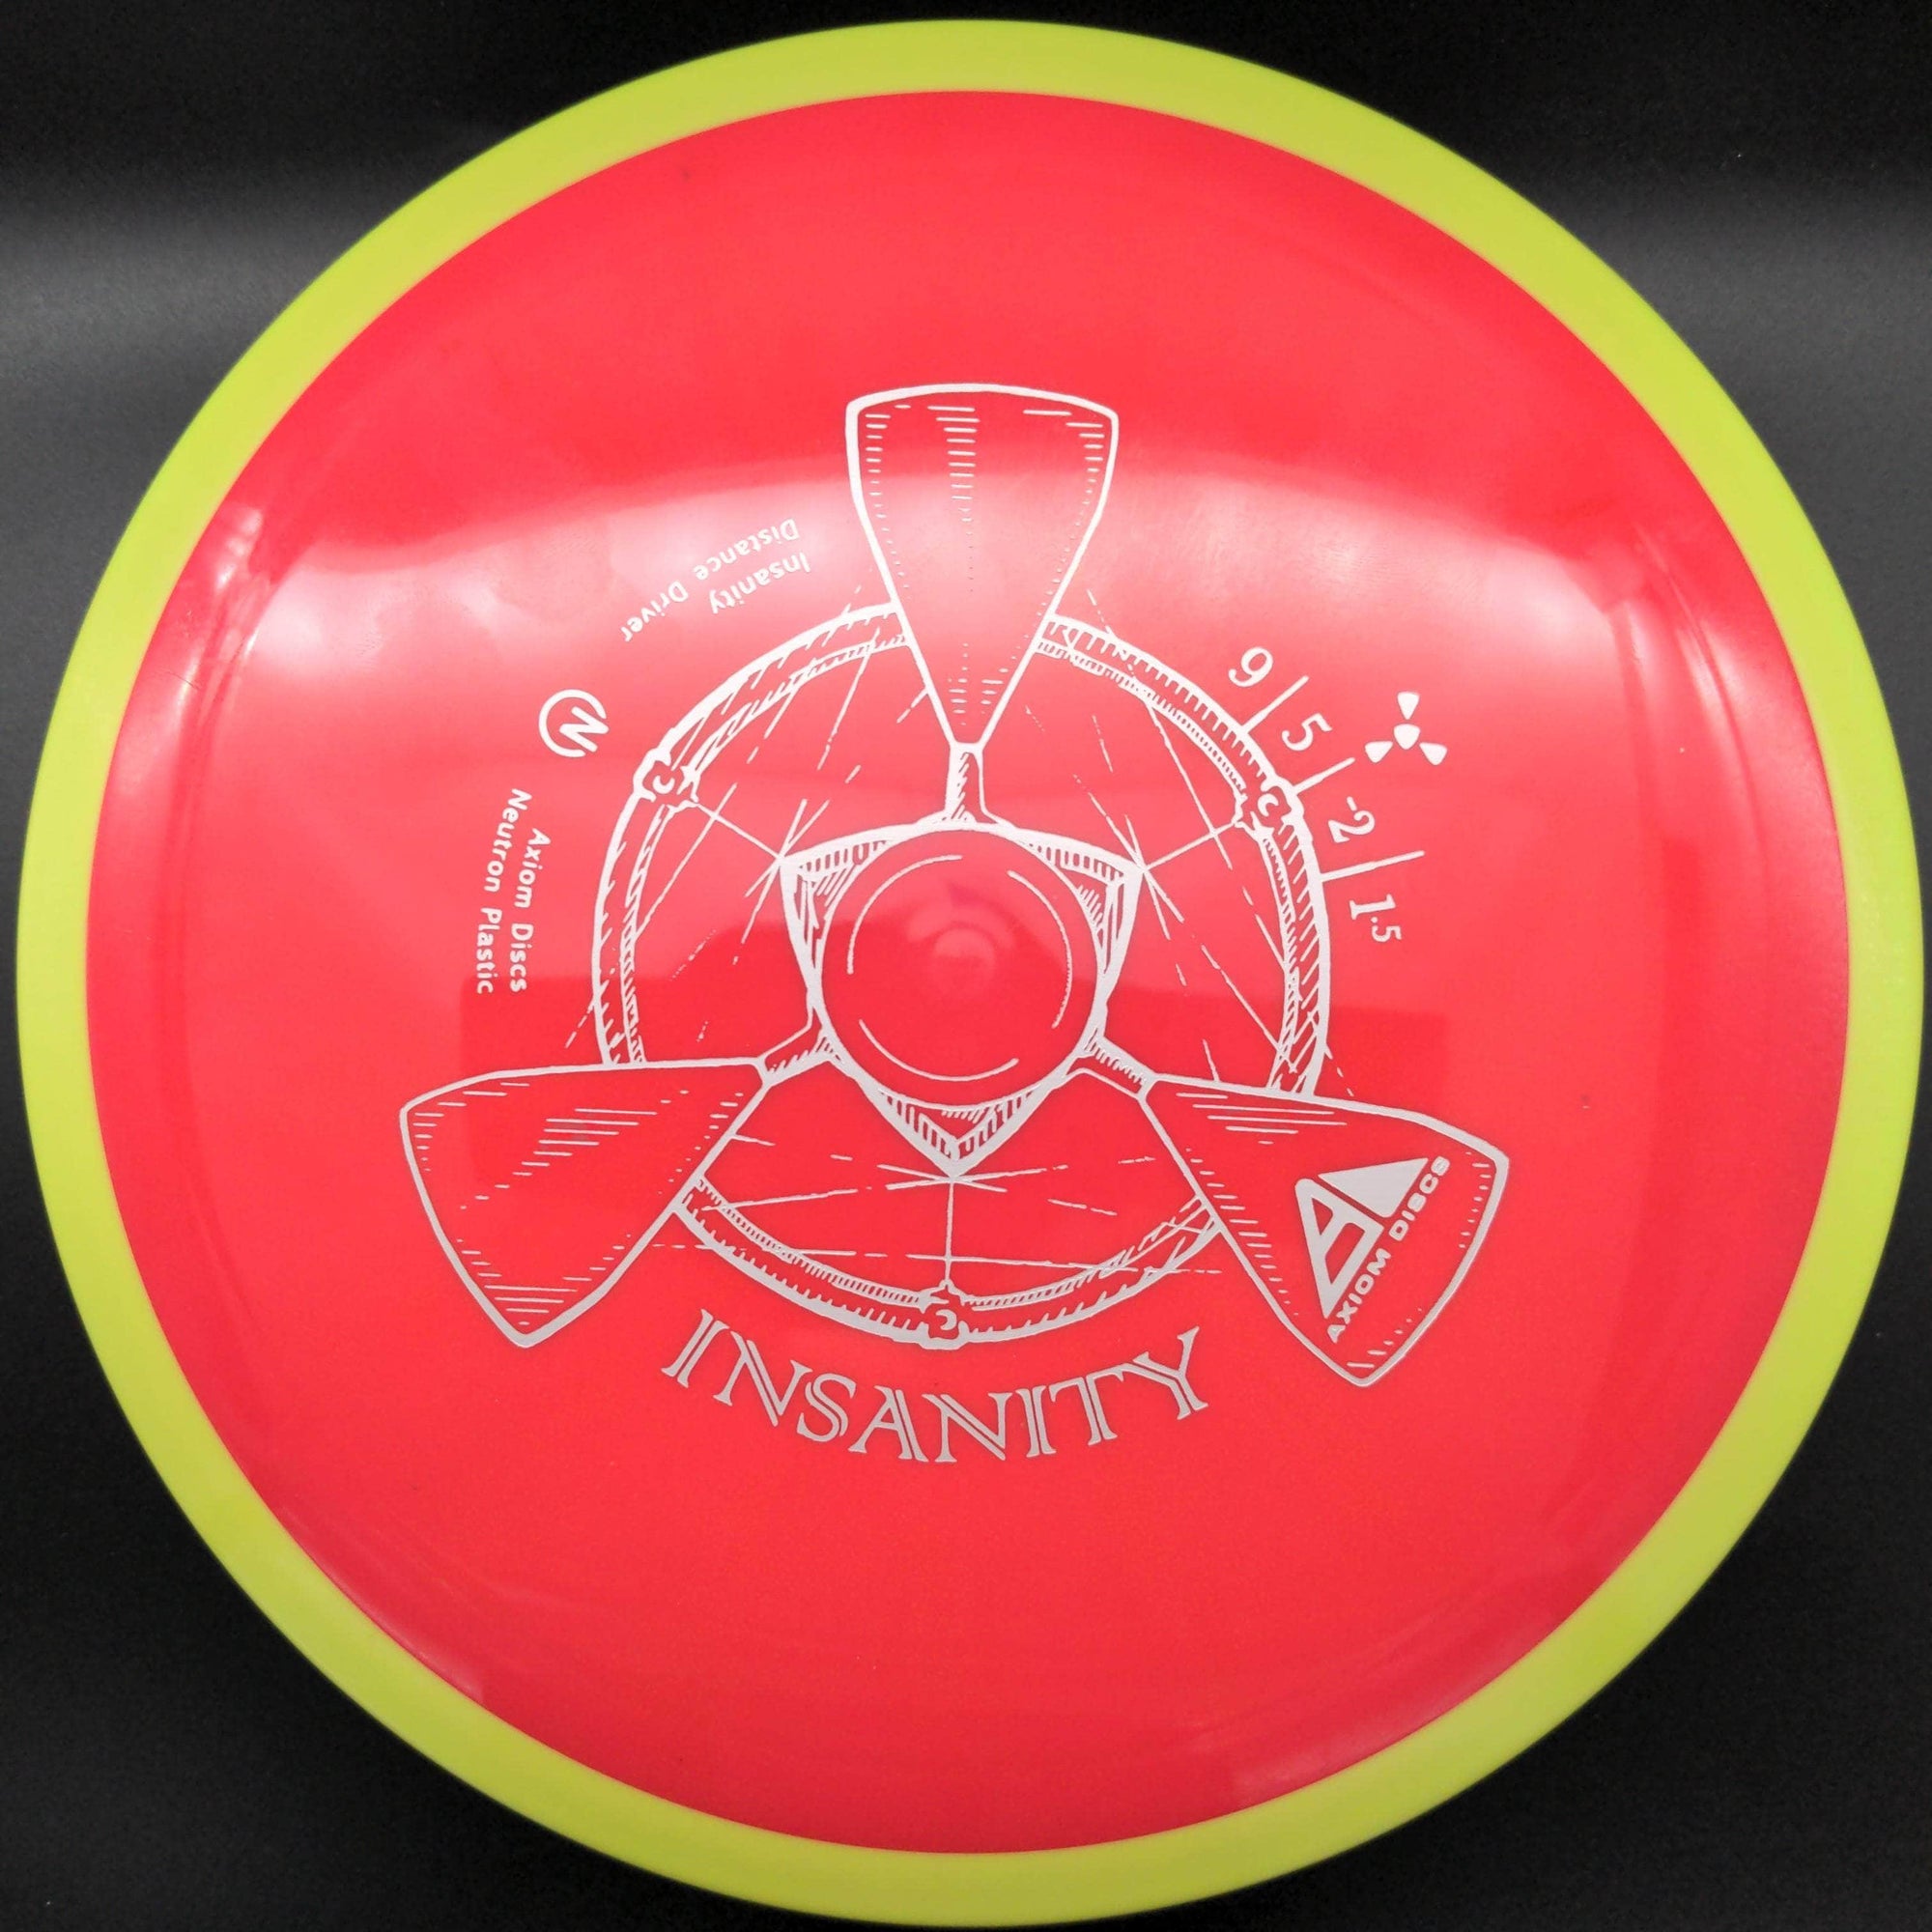 MVP Fairway Driver Yellow Rim Rid Plate 173g Insanity, Neutron Plastic